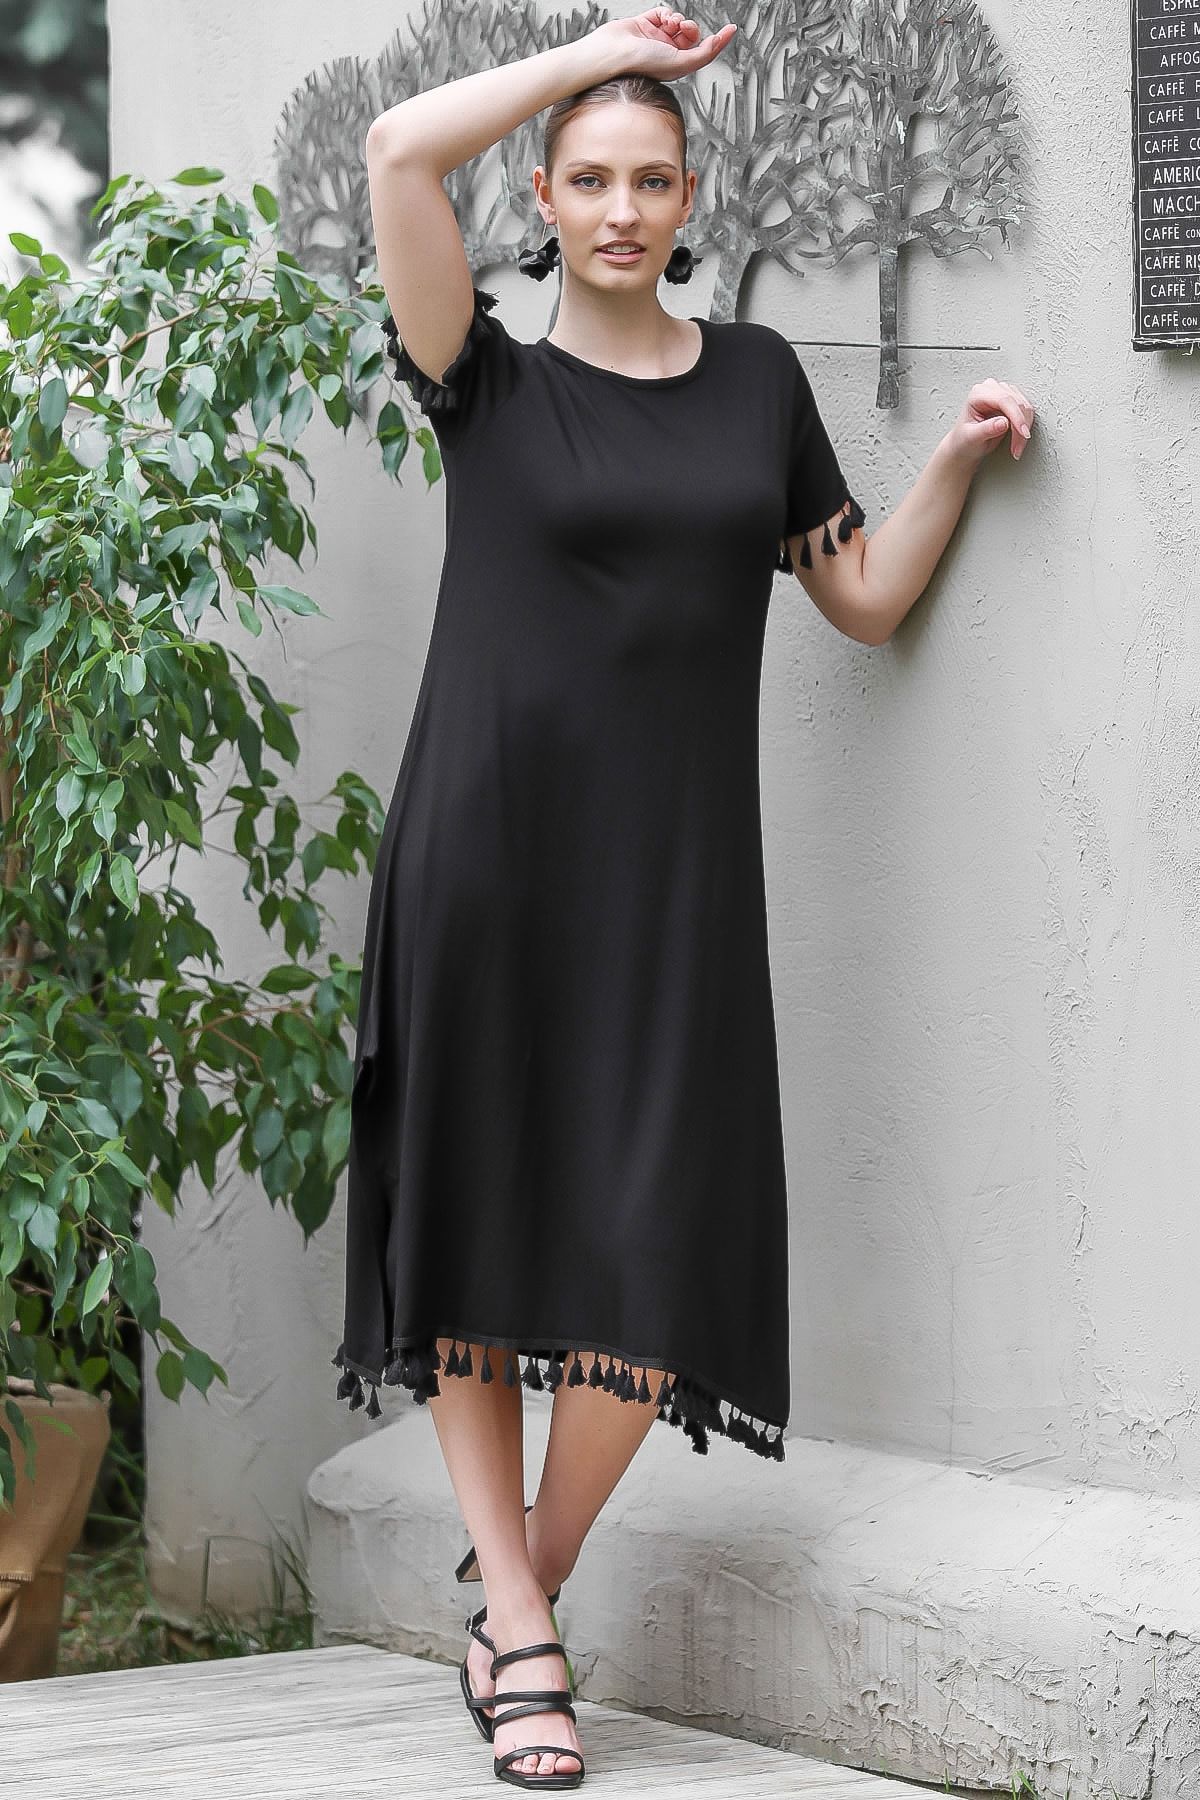 Chiccy Kadın Siyah Sıfır Yaka Kol Ve Etek Ucu Püsküllü Yırtmaçlı Elbise M10160000EL95067